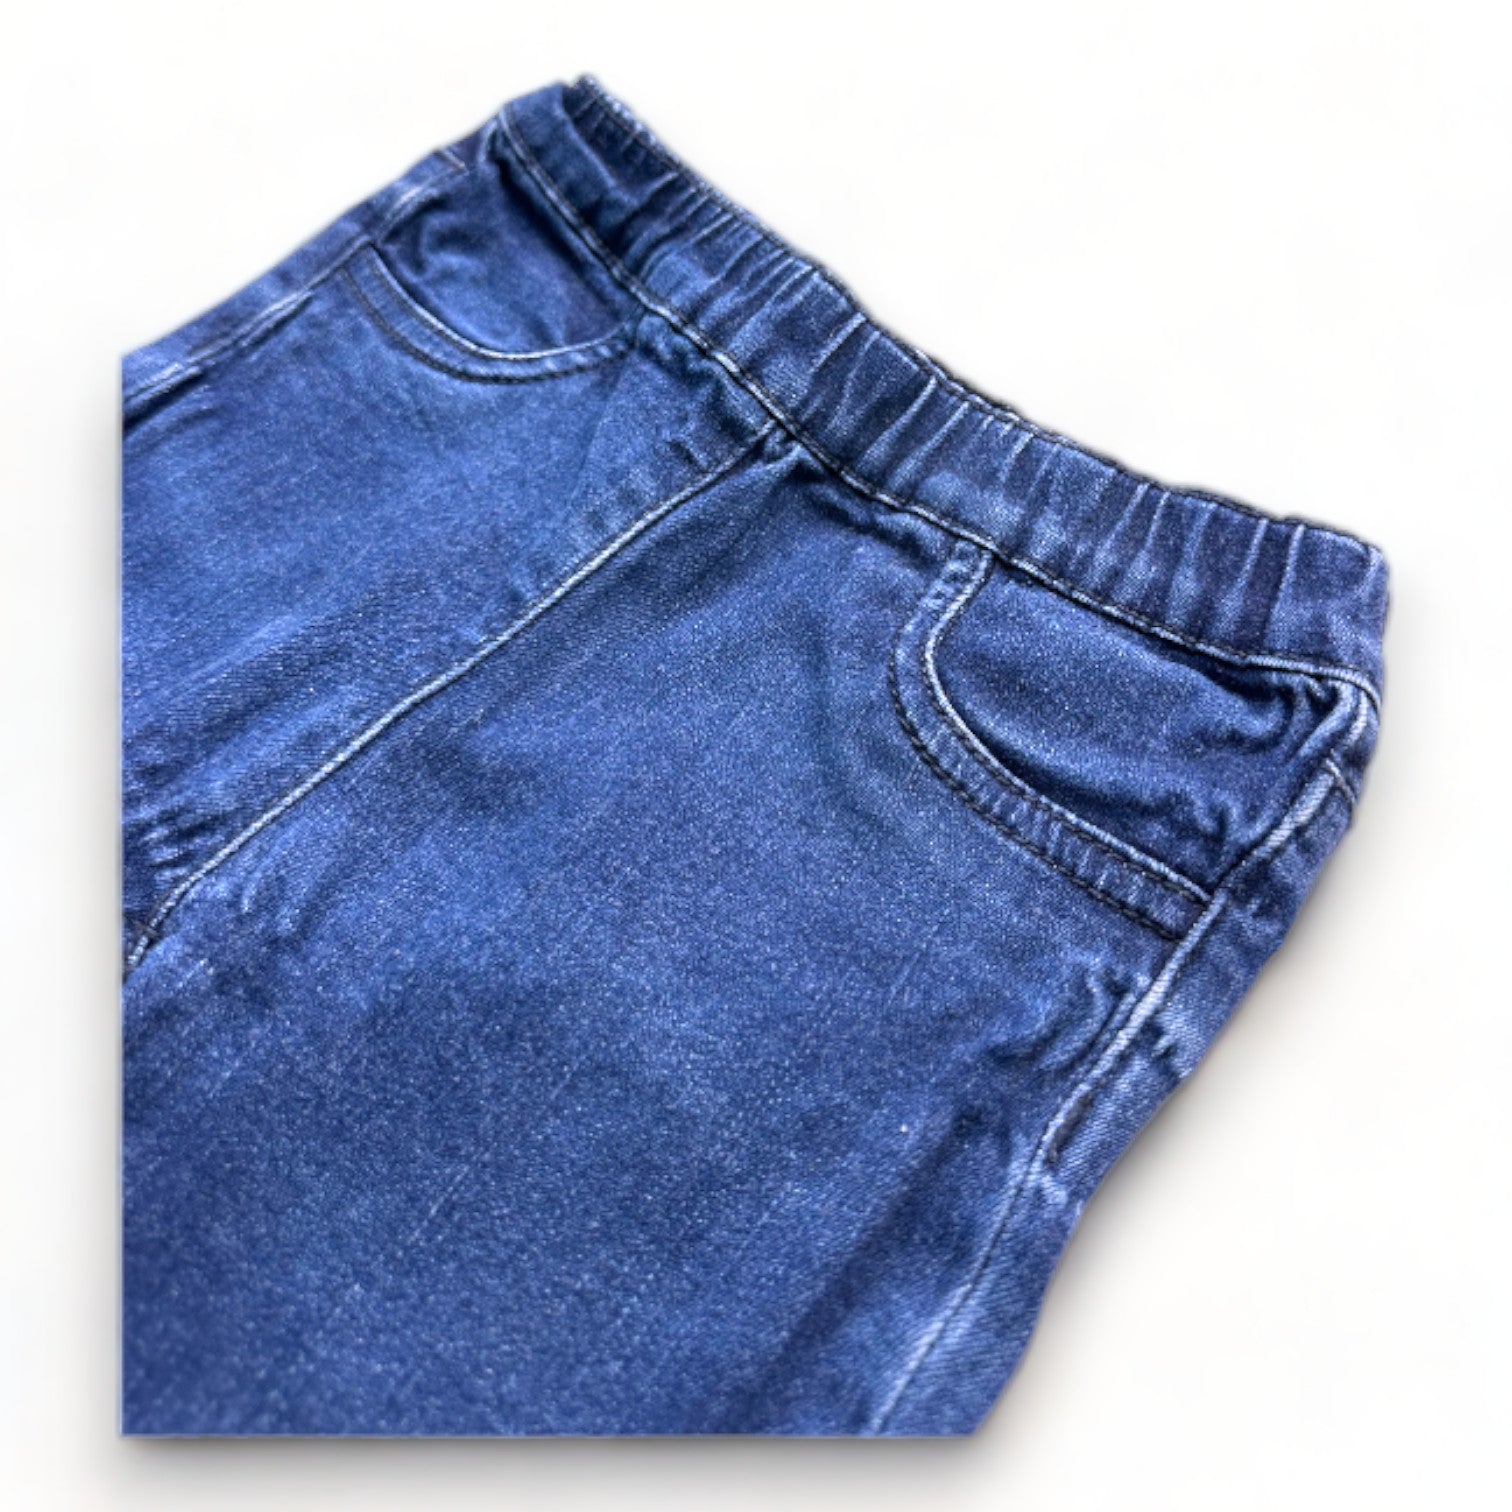 PETIT BATEAU - Pantalon en jean bleu - 3 ans